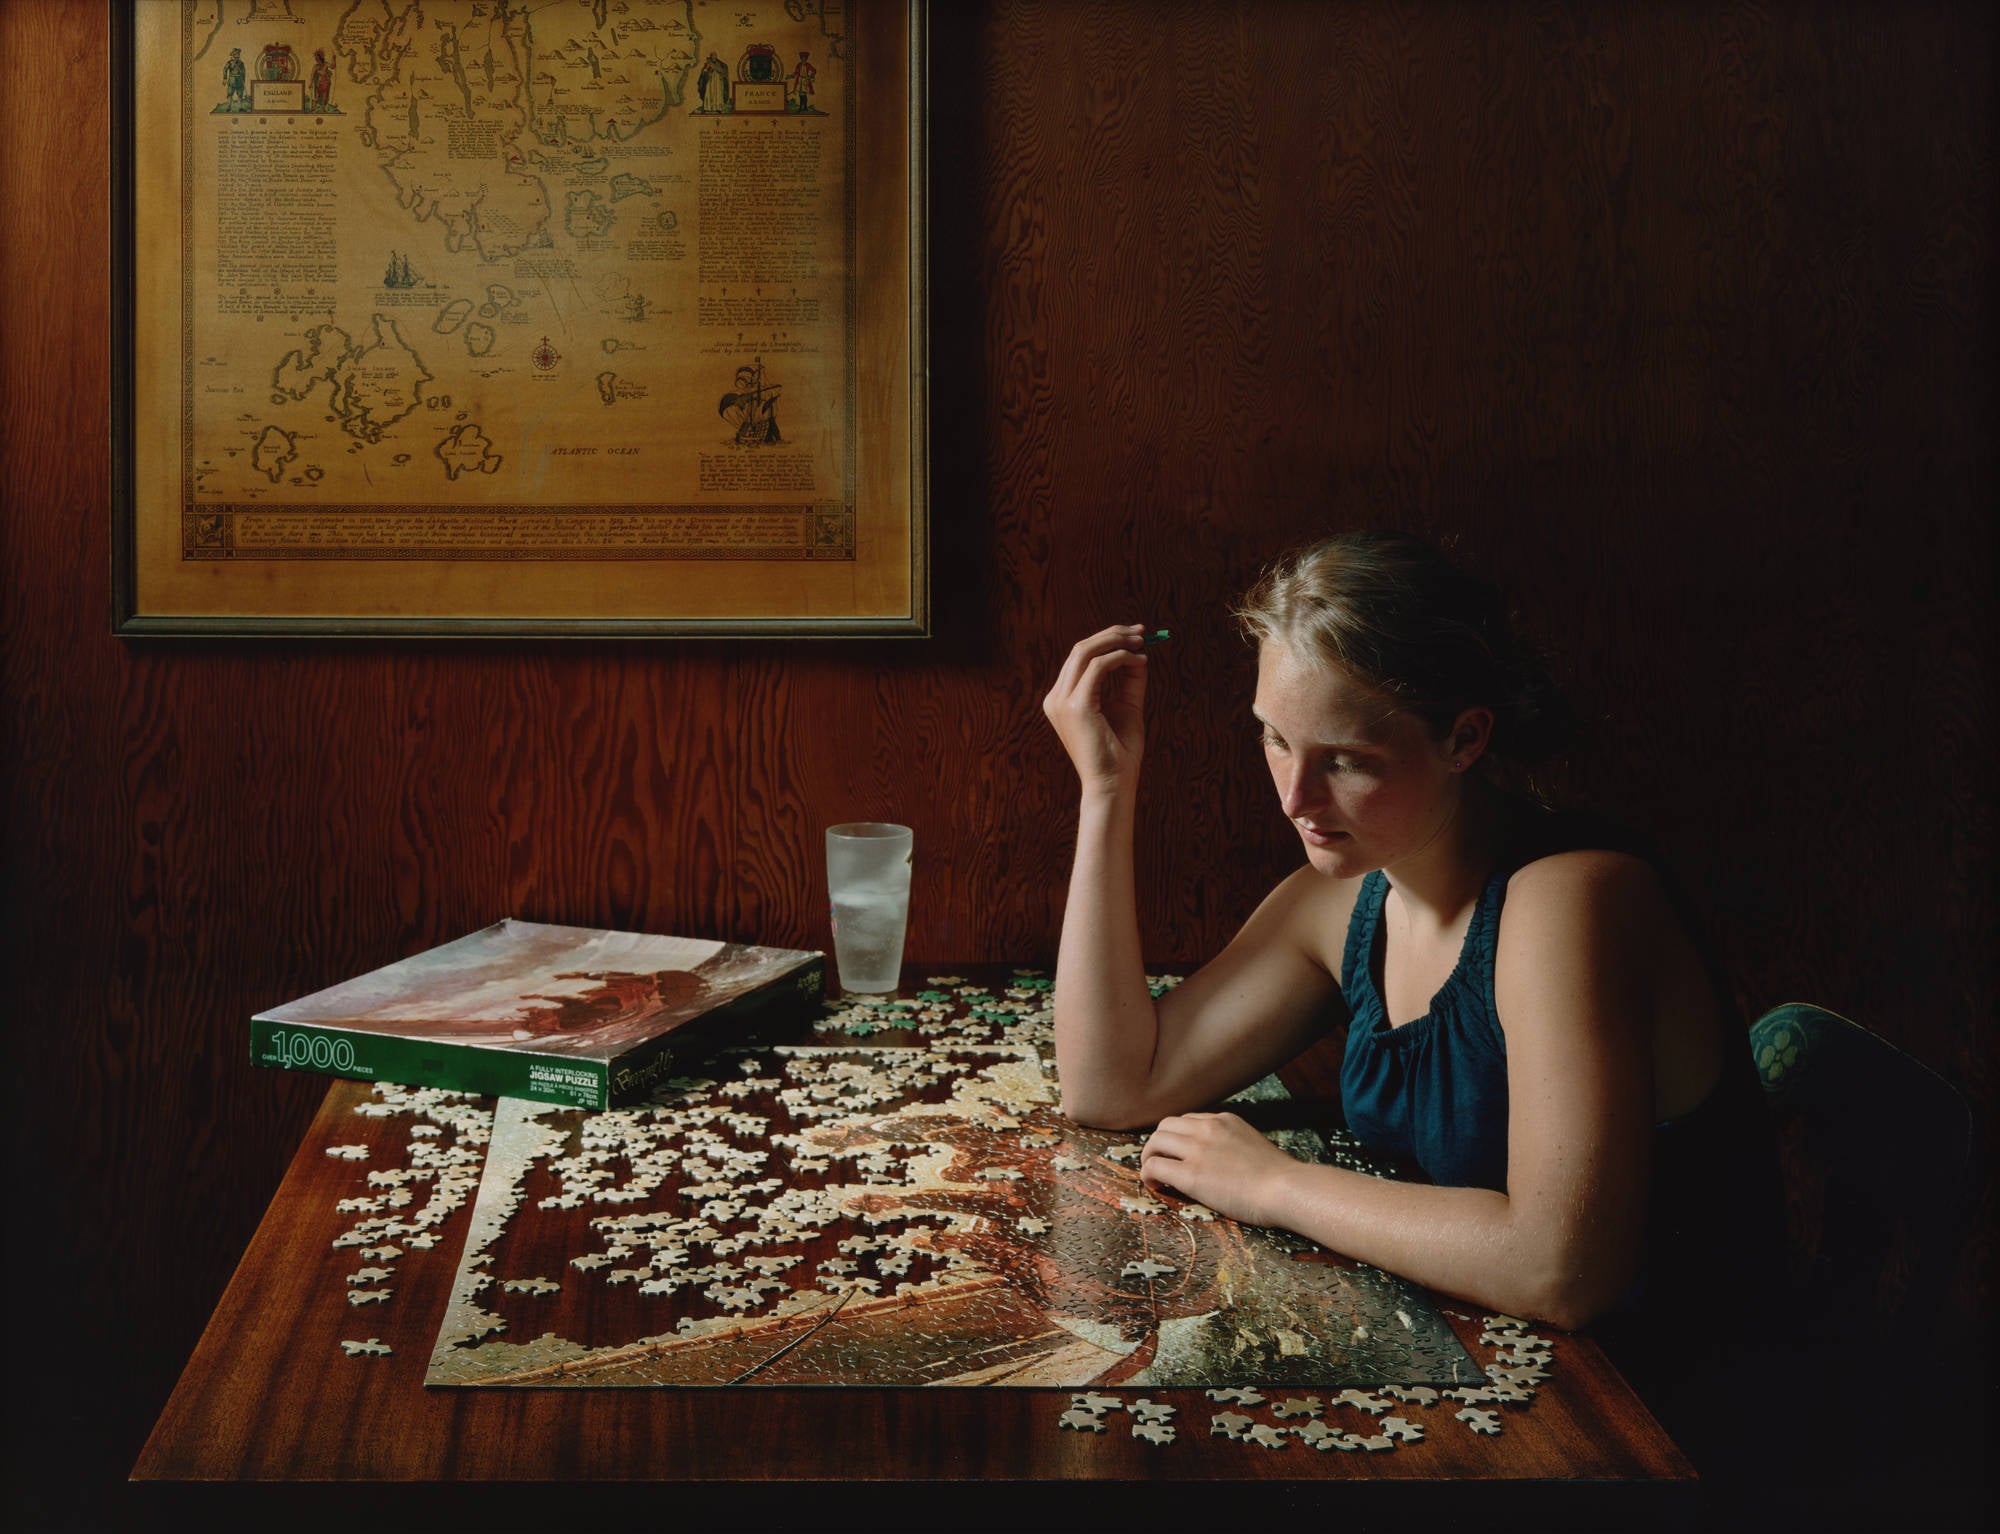 《无题，2010》(Untitled, 2010)，莎伦·洛克哈特(Sharon Lockhart)著。显色打印，37 × 49英寸。纽约现代艺术博物馆。